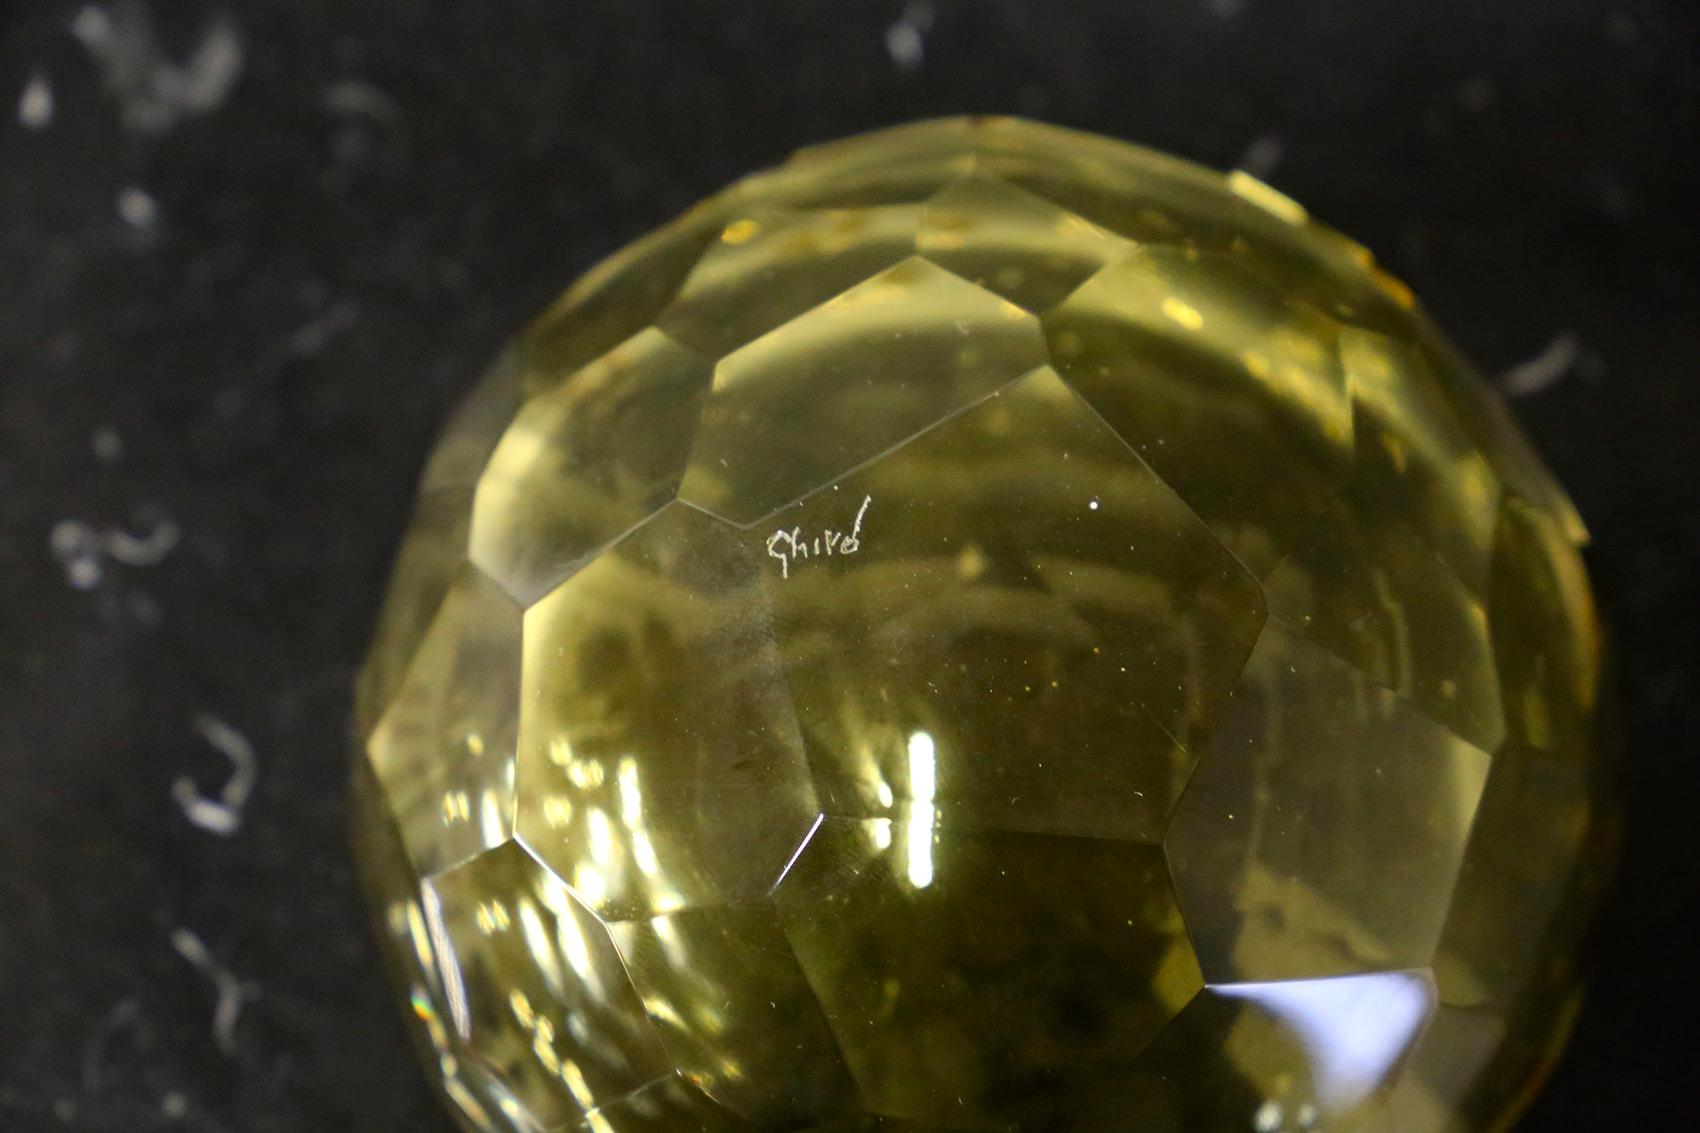 Italian Ghirò Studio Jewel Box in Brass and Glass Yellow, 2019